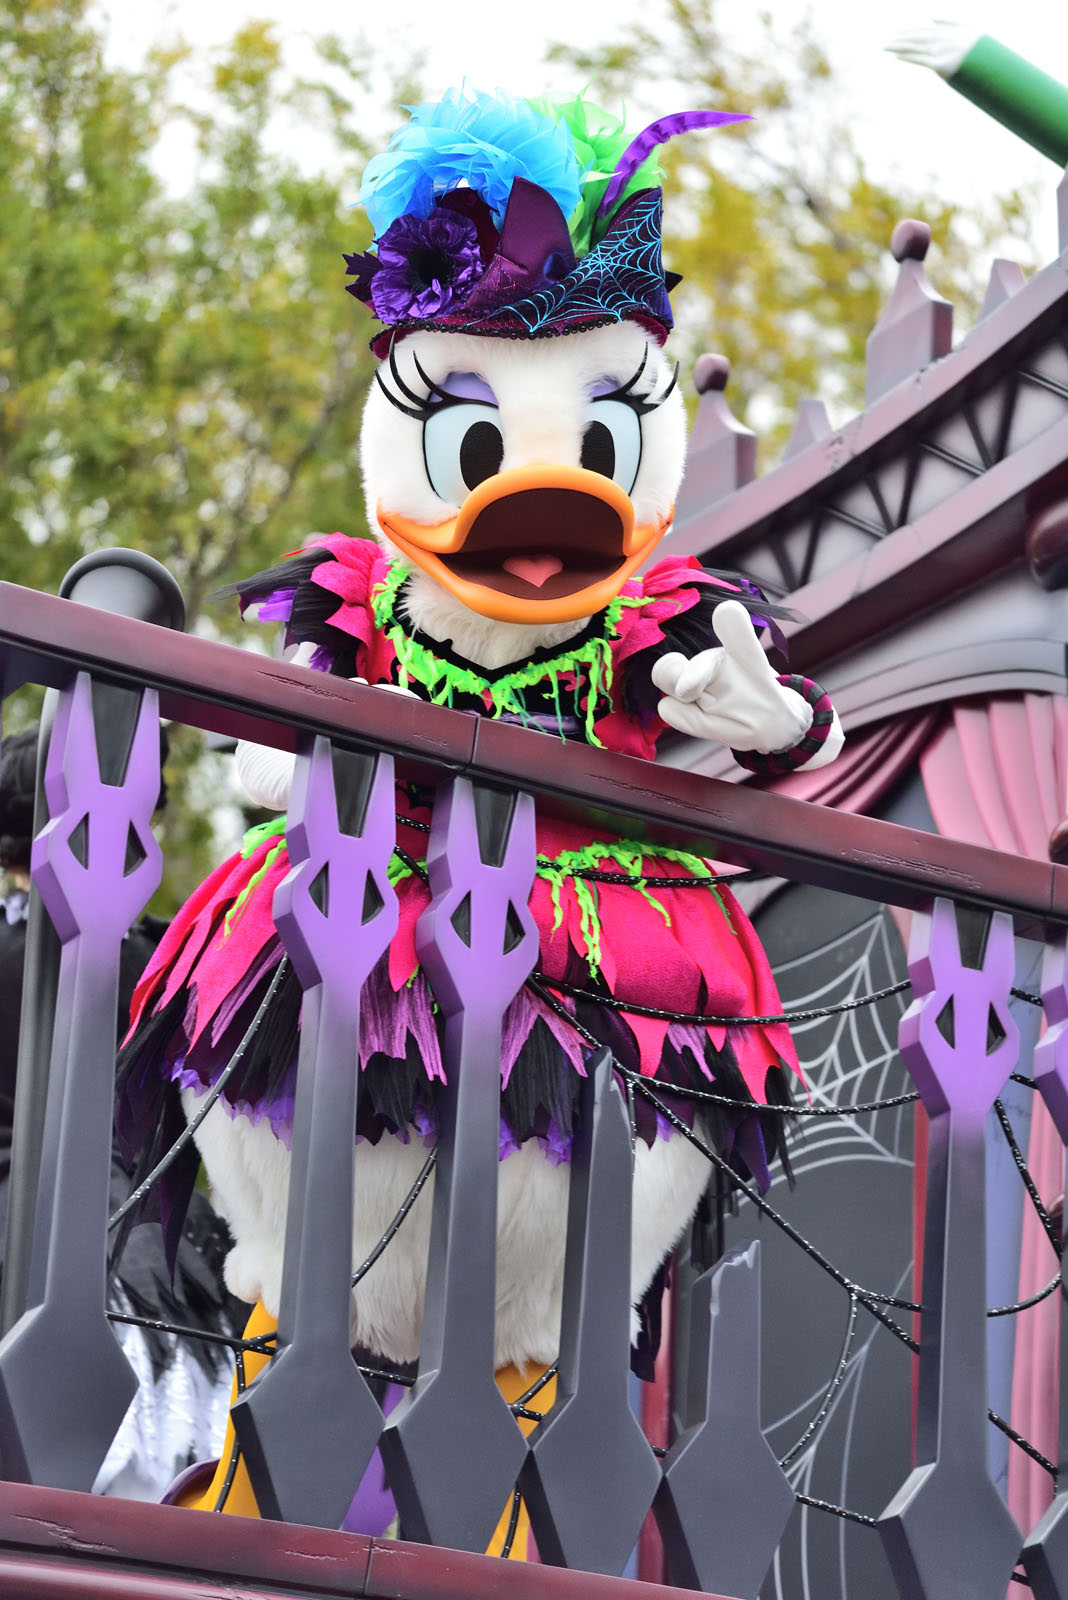 東京ディズニーランド スプーキー“Boo!”パレード2018 デイジー